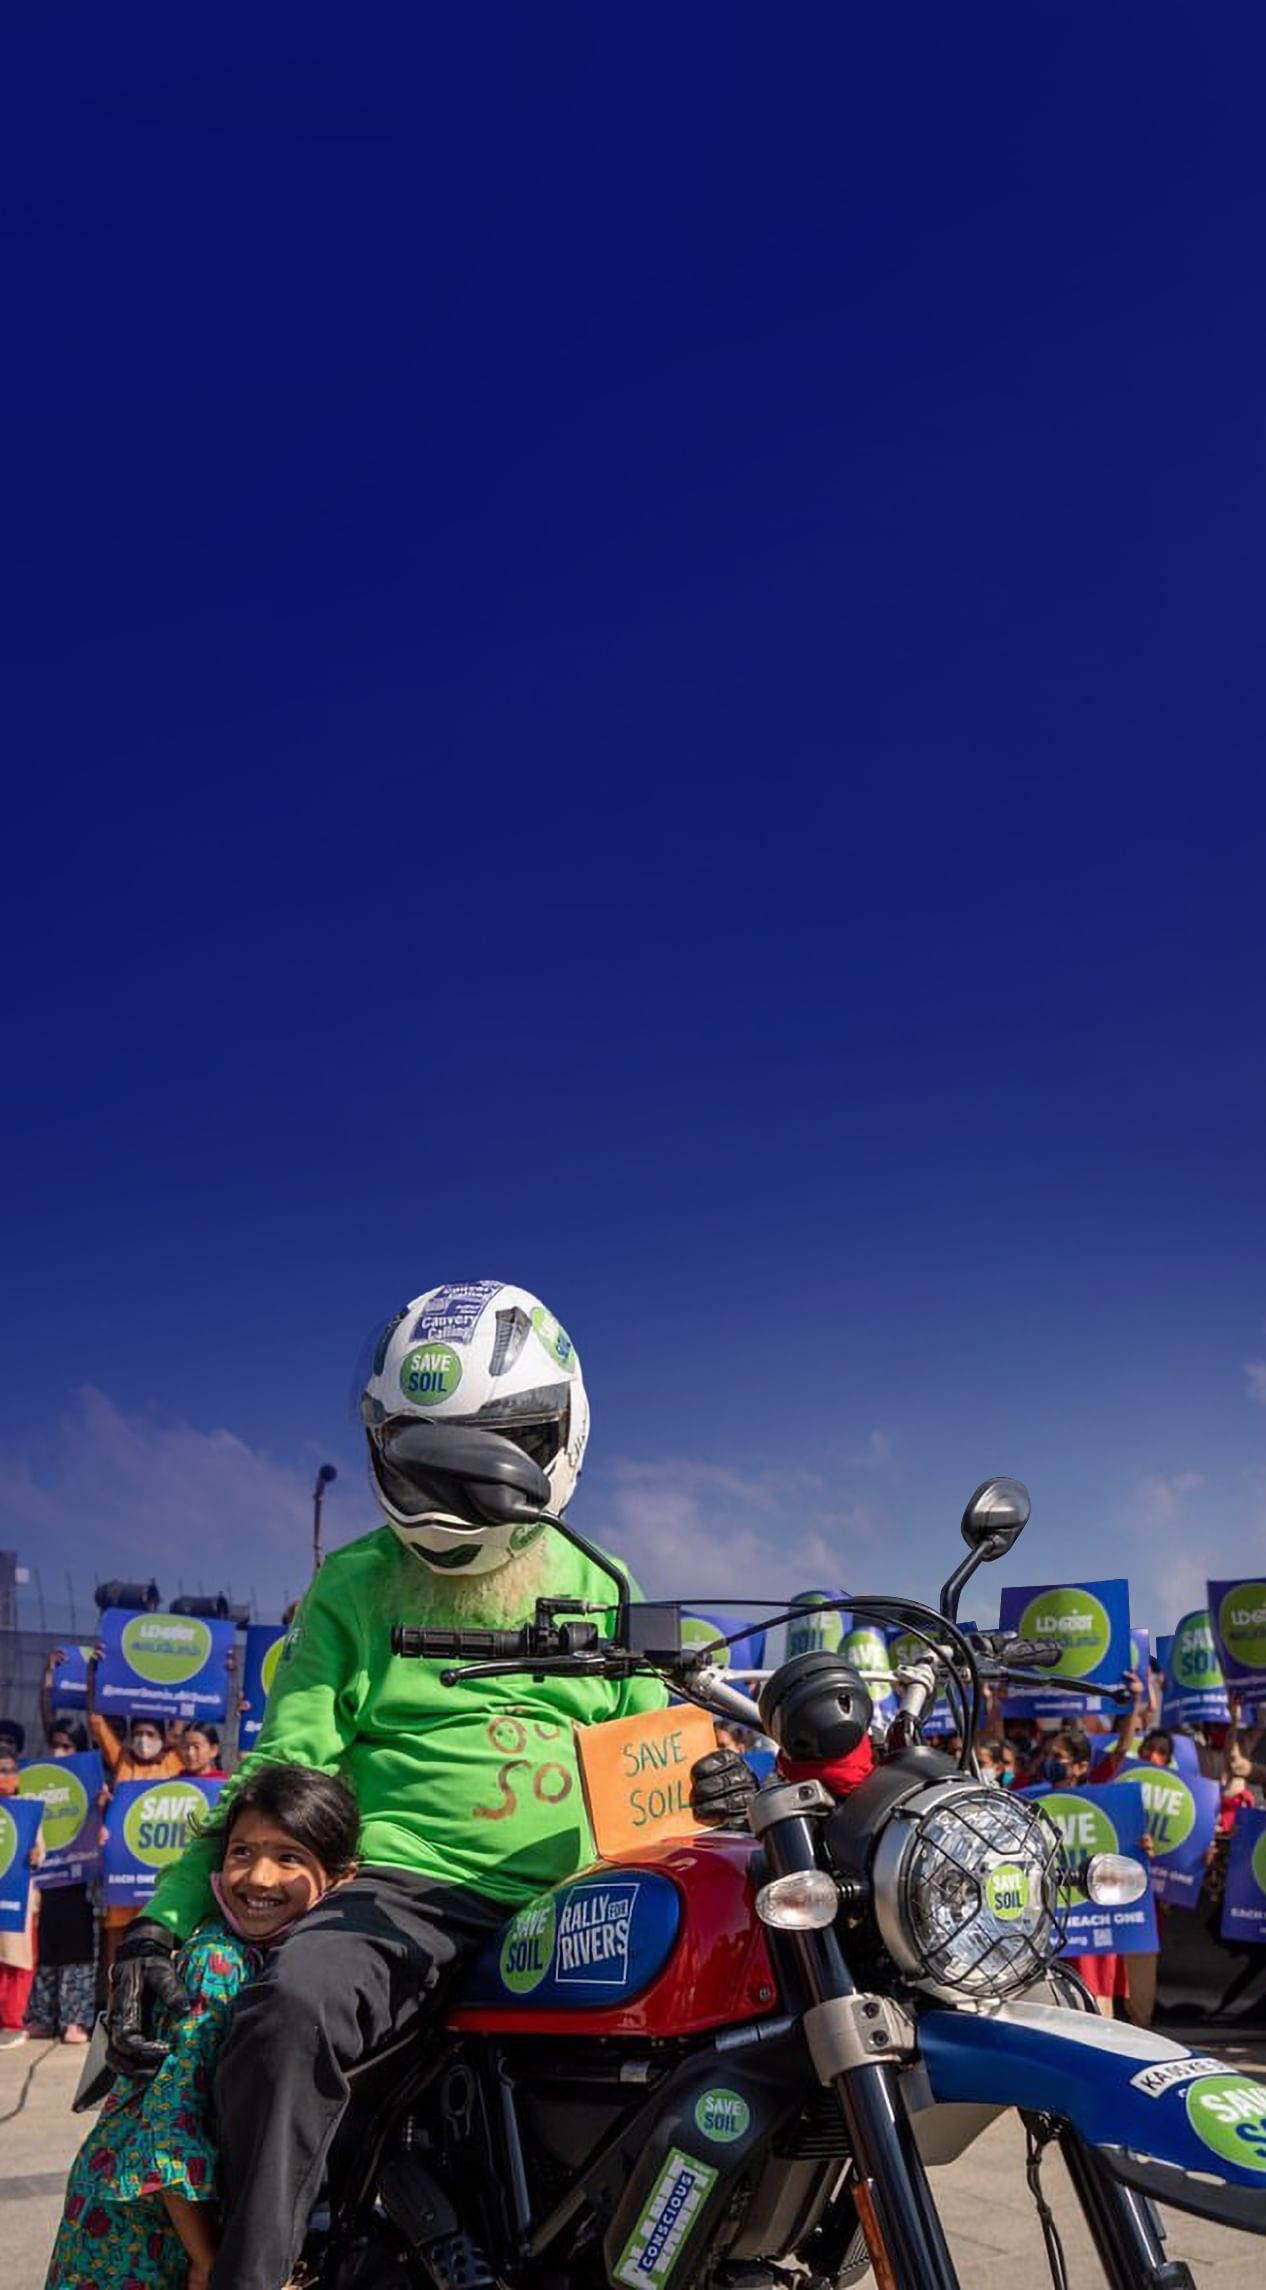 سادغورو على درّاجة ناريّة مع لافتة أنقذوا التربة، وبجانبه طفل